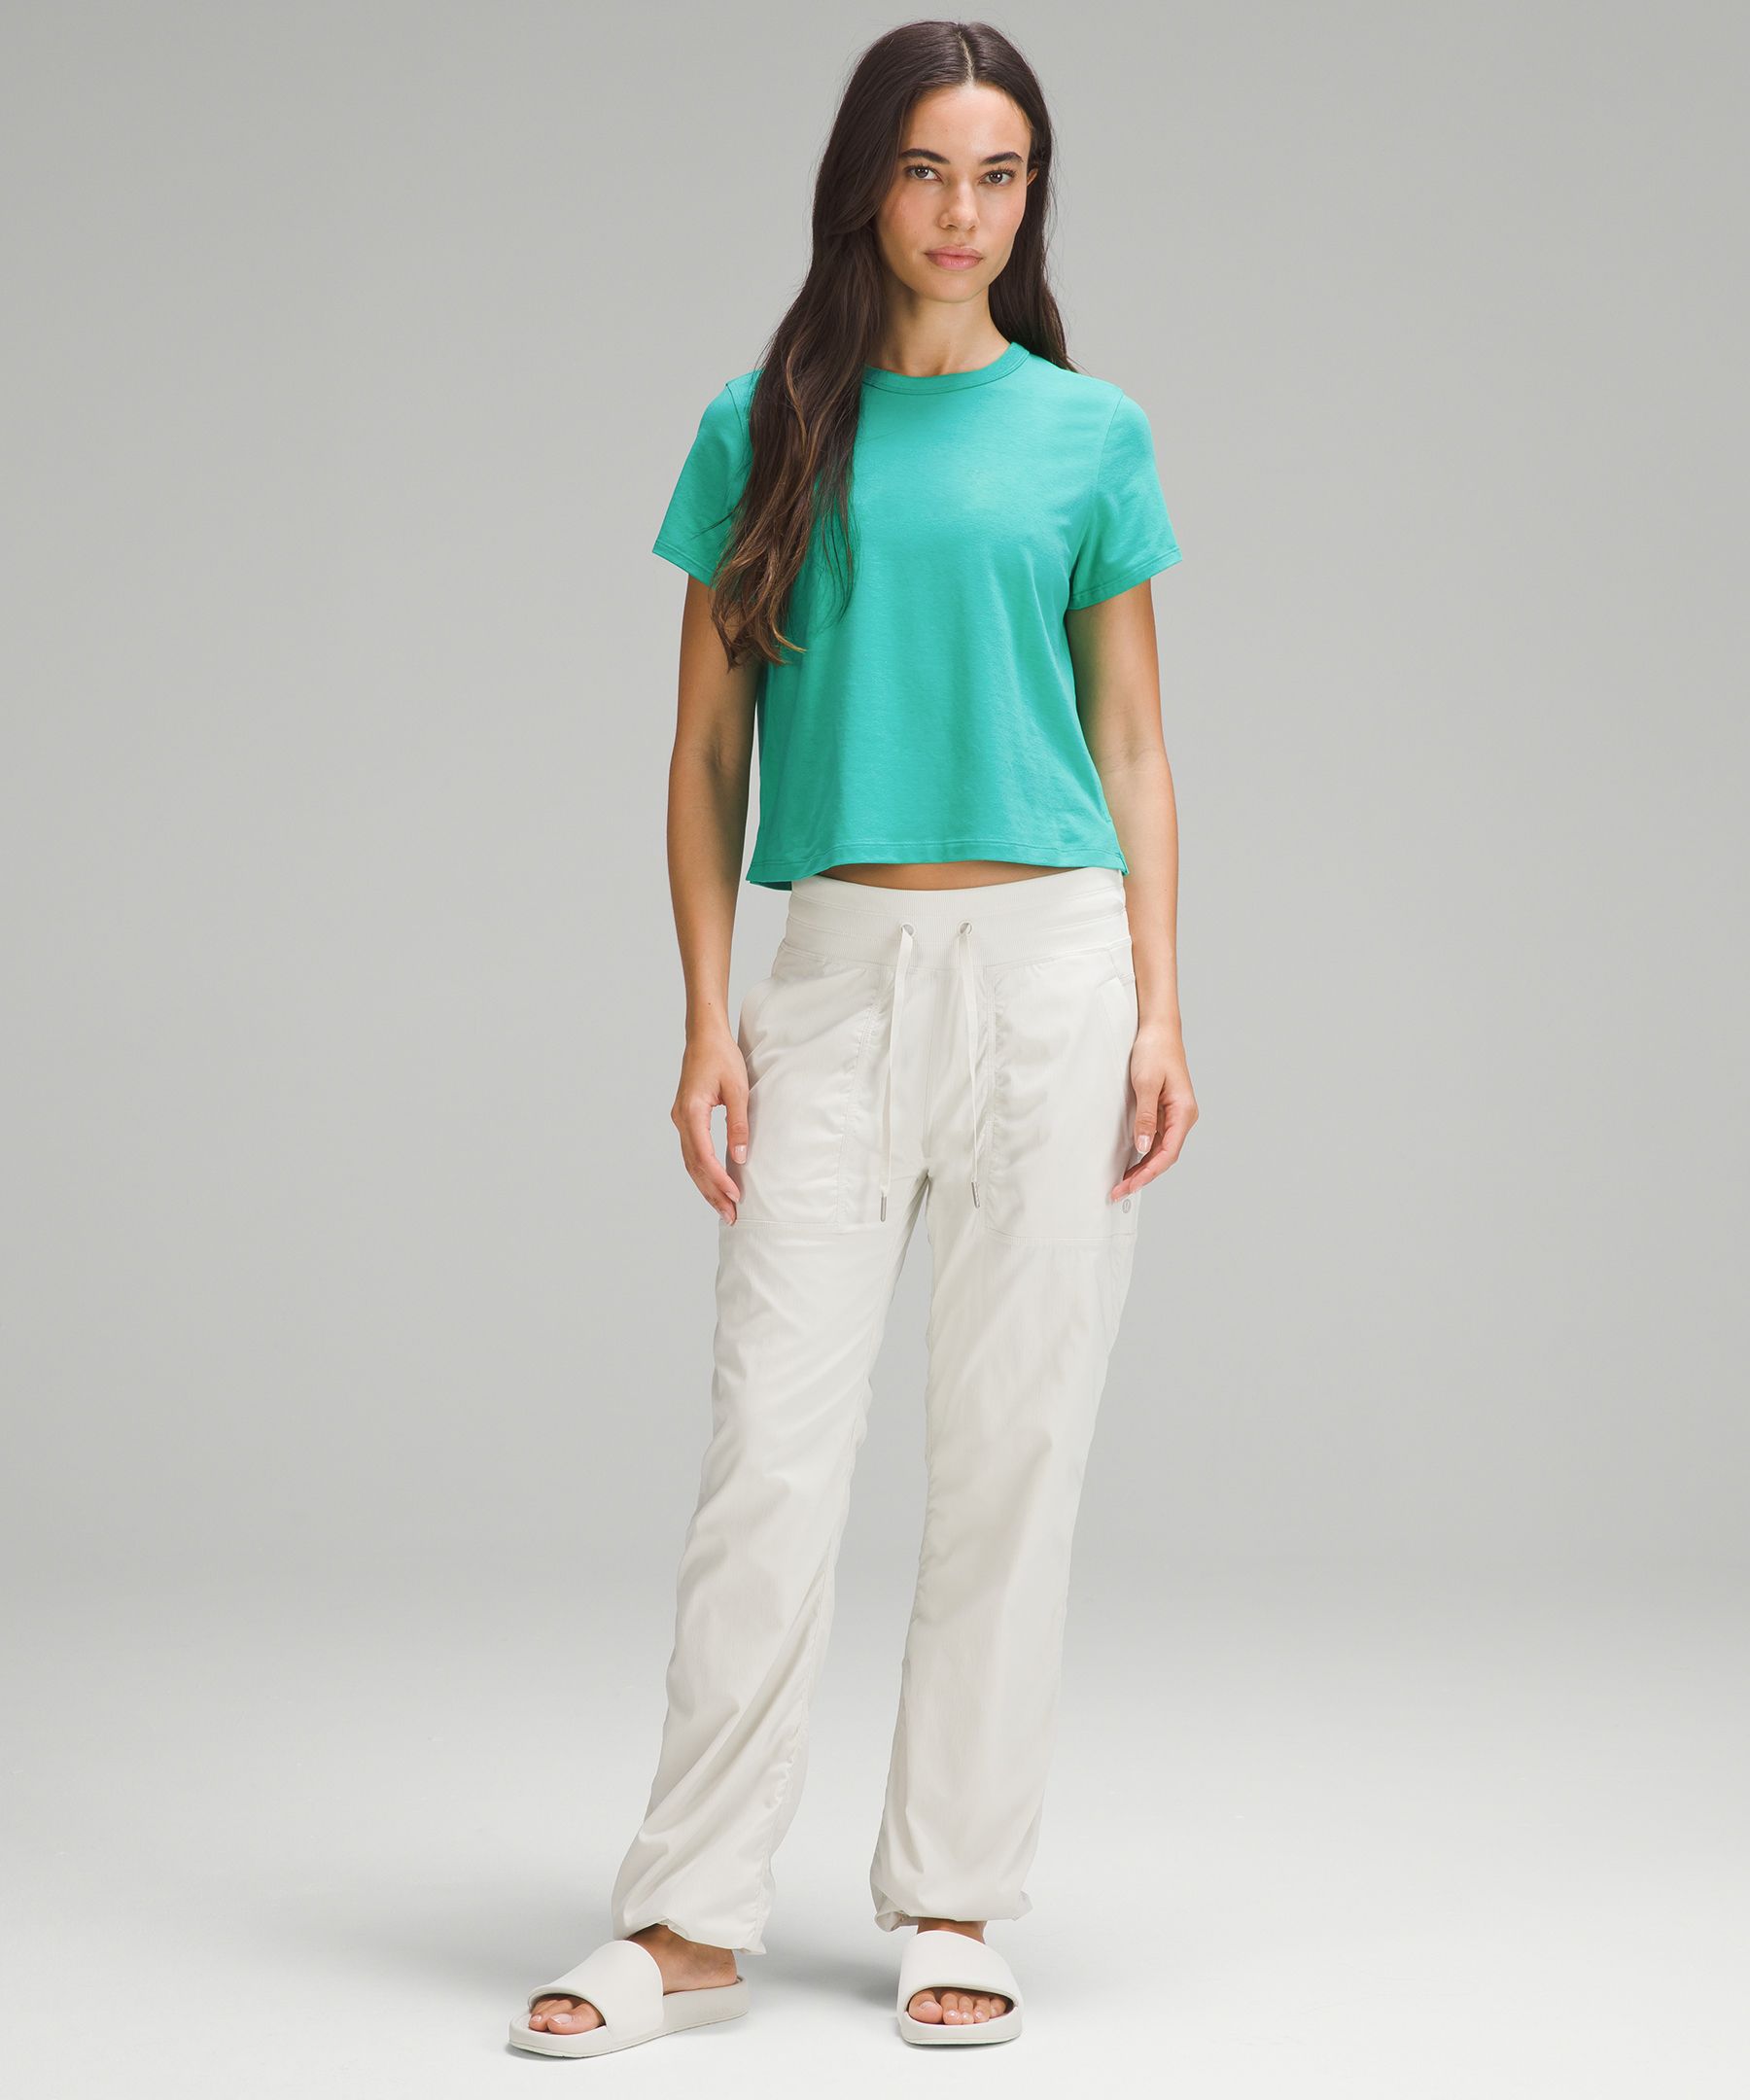 Lululemon Classic-Fit Cotton-Blend T-Shirt. 2